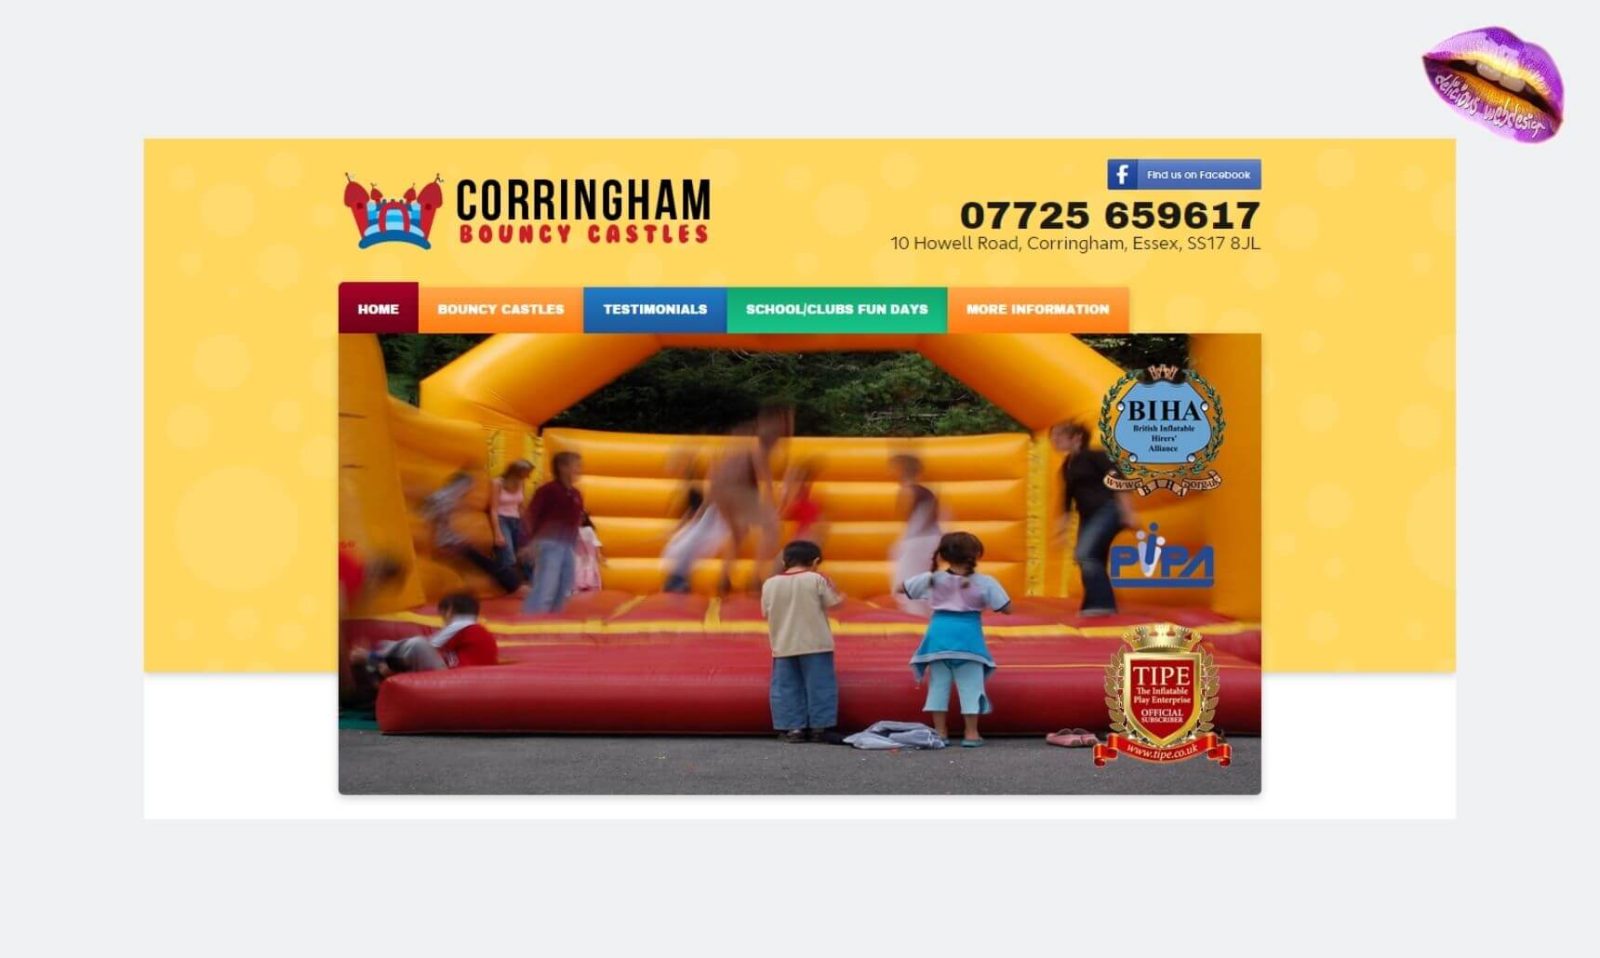 corringham bouncy castles 01